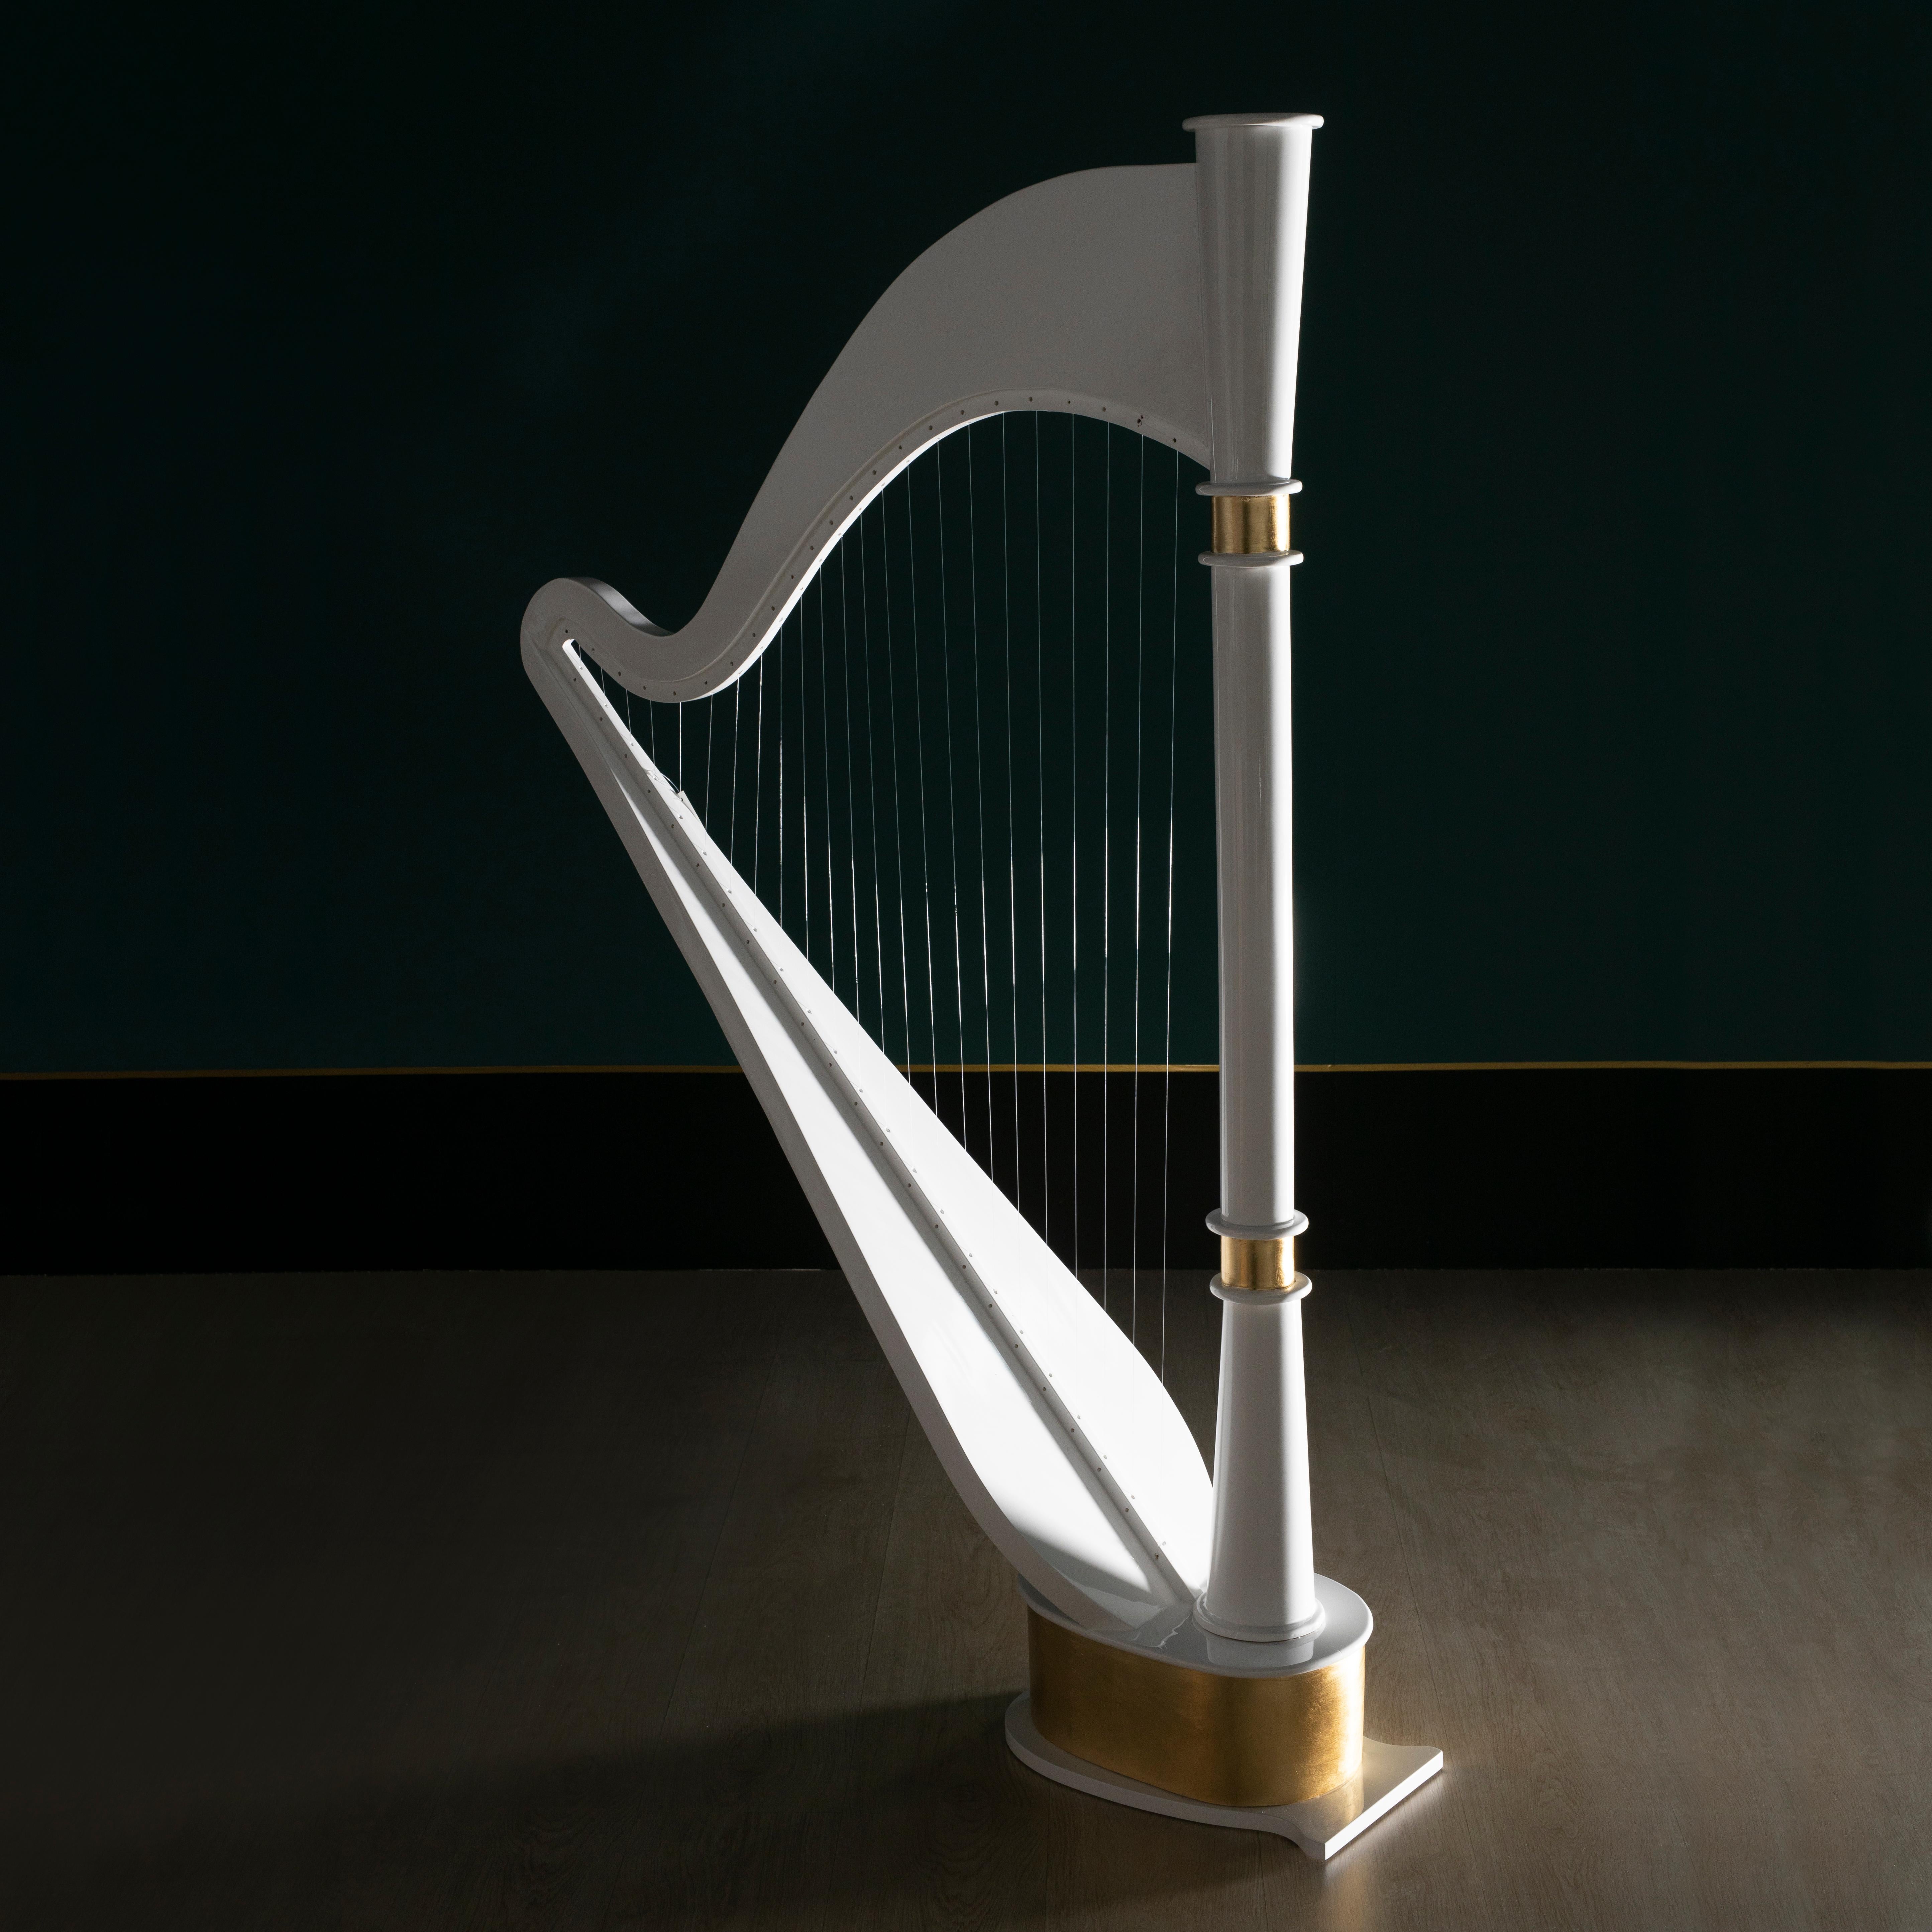 Harpe de vallée décorative, Collection S, fabriquée à la main au Portugal - Europe par Lusitanus Home.

Valley a été conçu pour mettre en valeur les intérieurs luxueux. Harpe décorative laquée en blanc brillant avec des détails en feuilles d'or